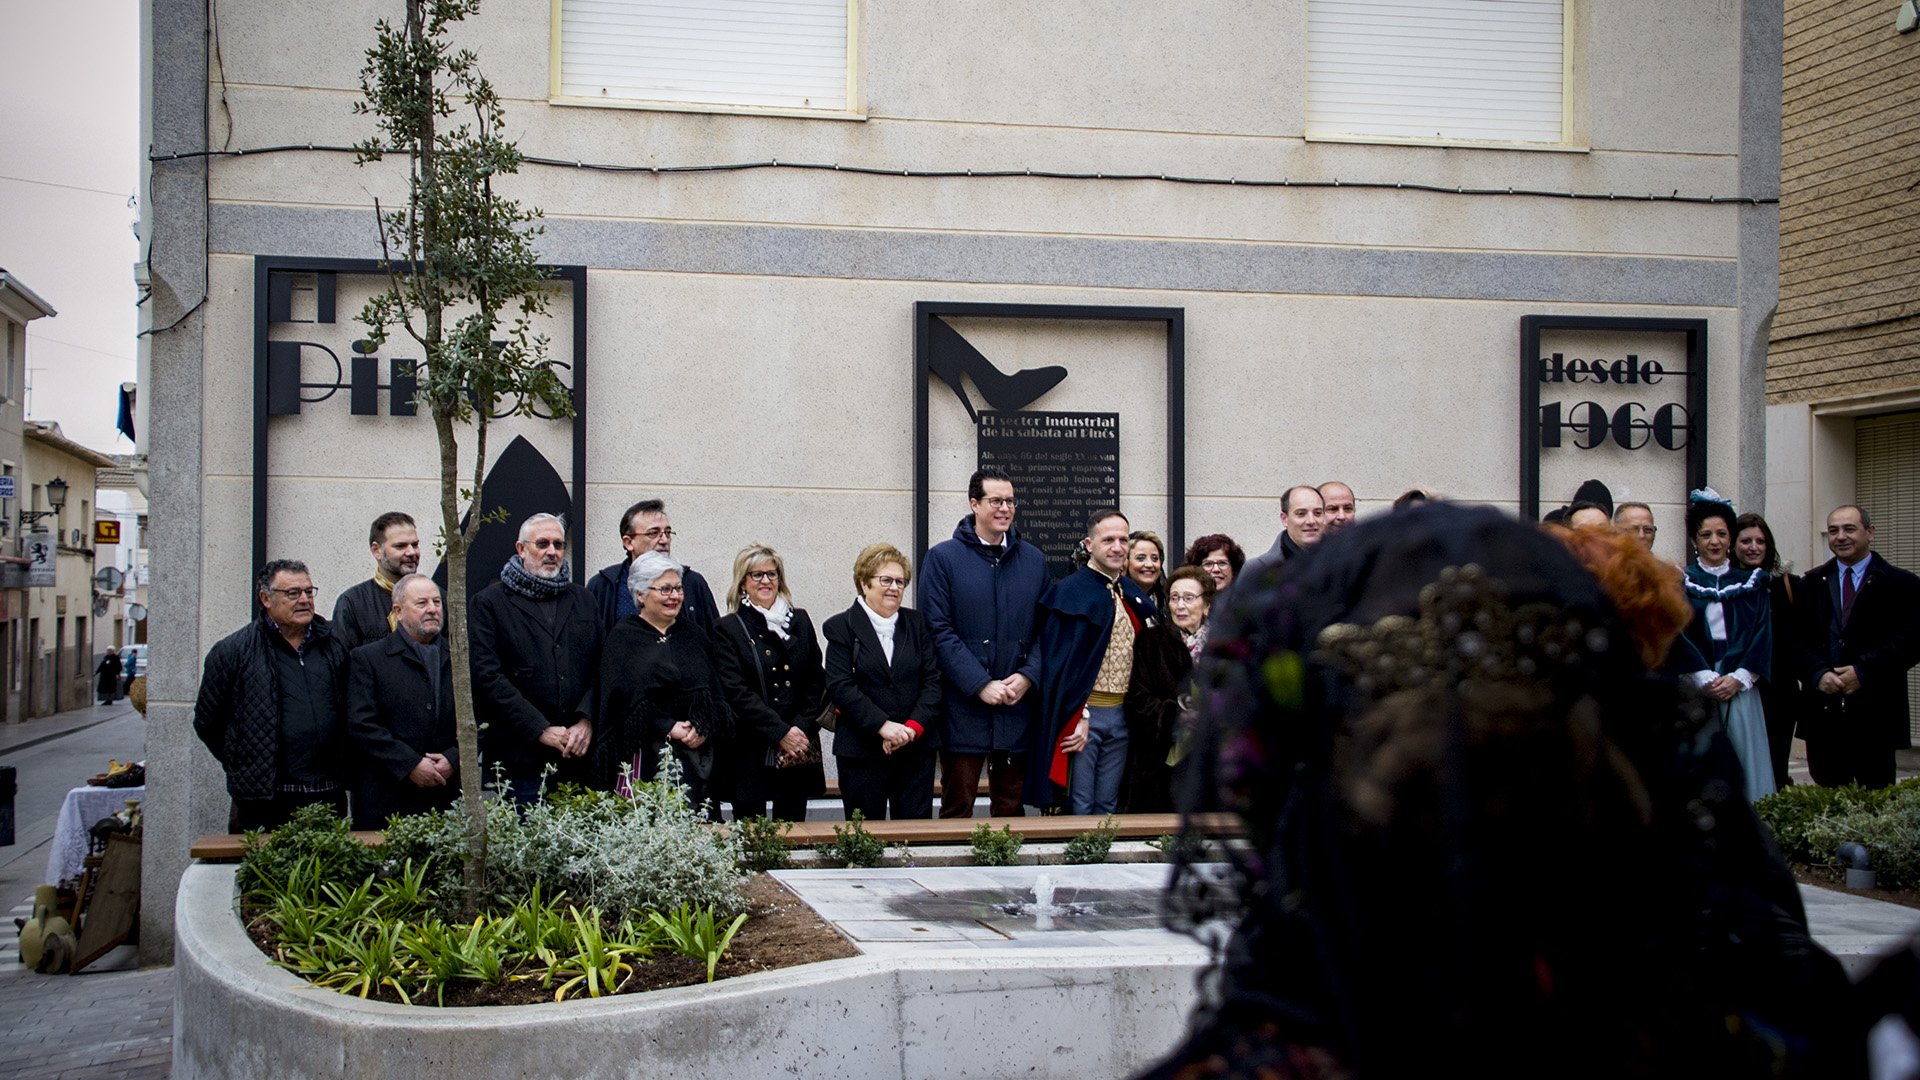 Imagen de grupo delante del monumento al calzado.